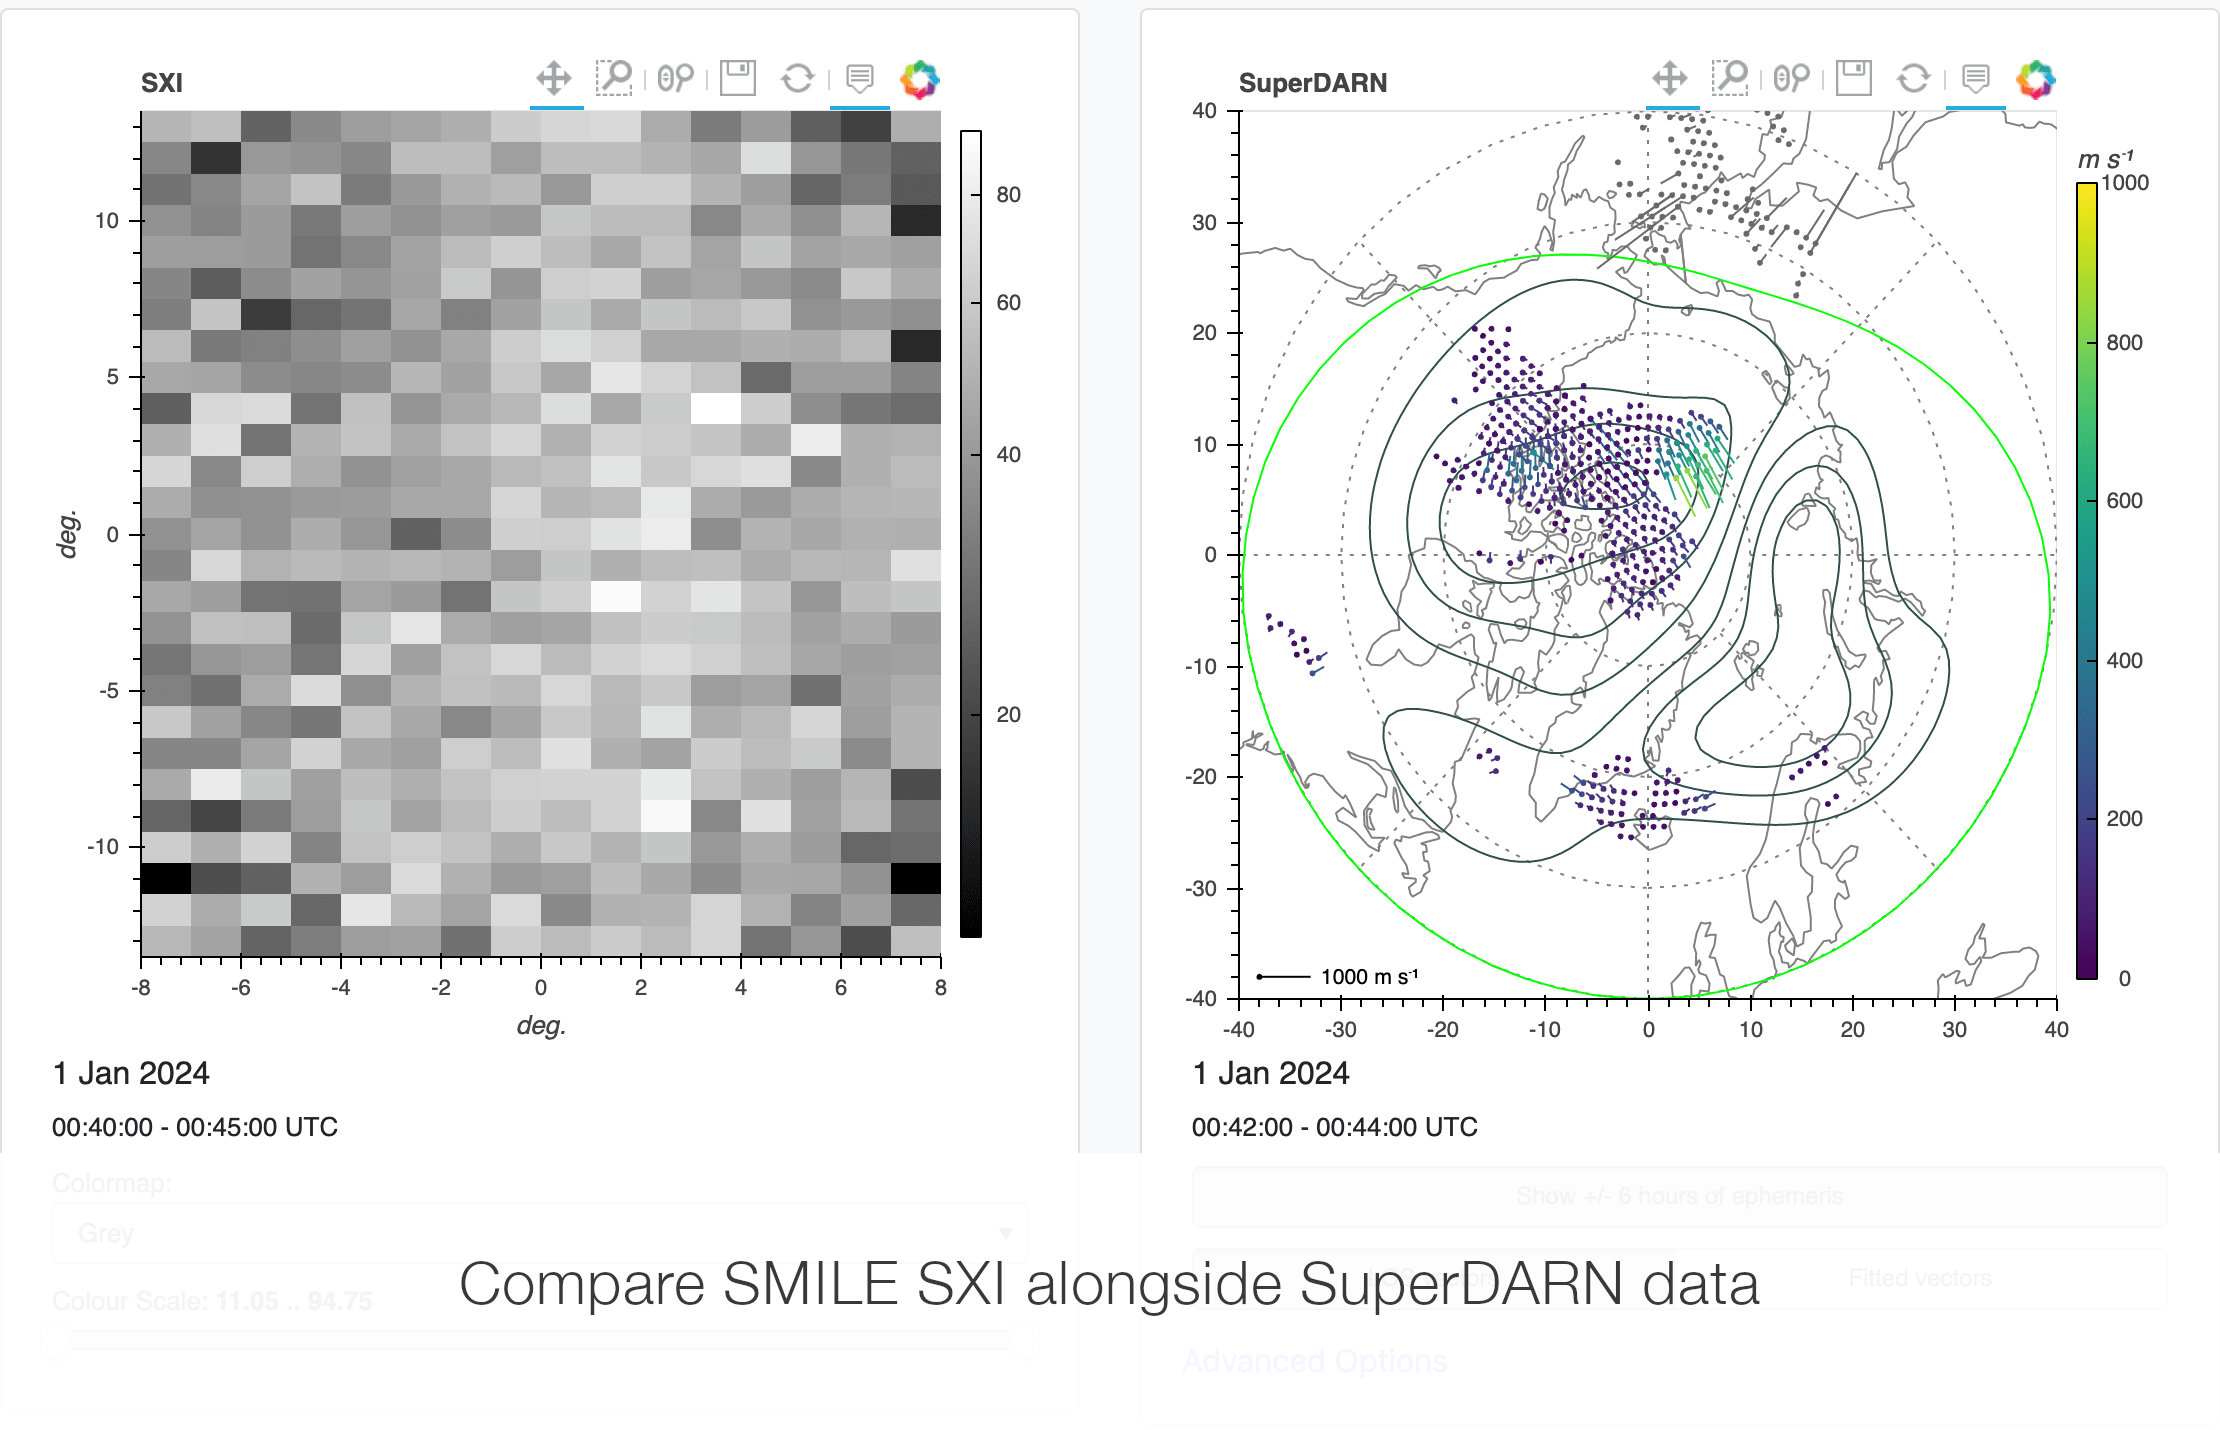 Compare SMILE SXI and SuperDARN data alongside